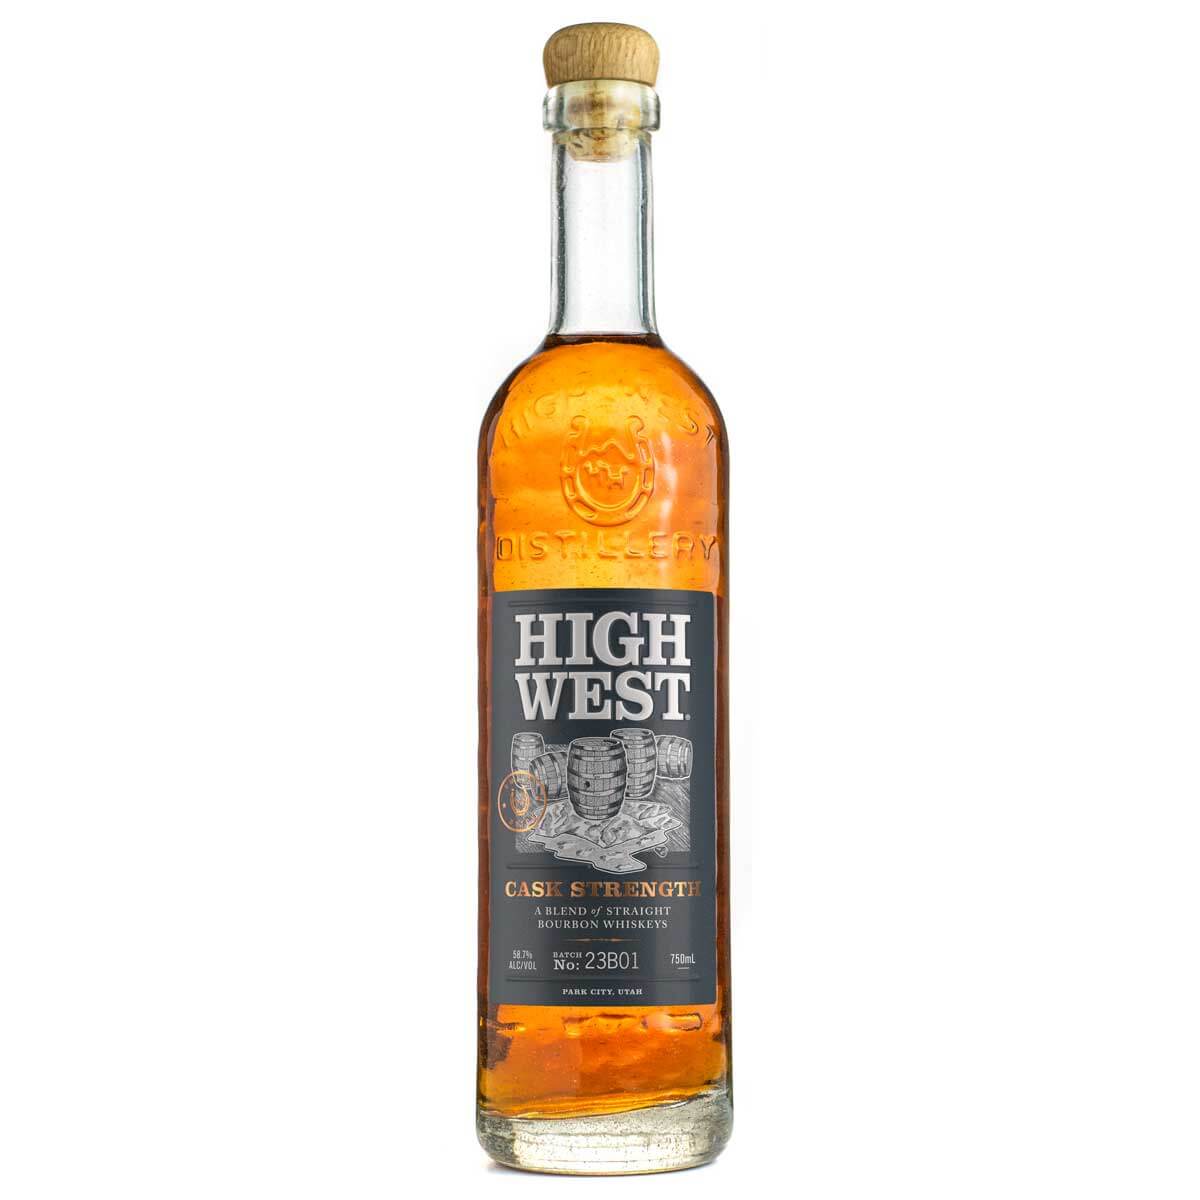 High West Cask Strength Bourbon bottle